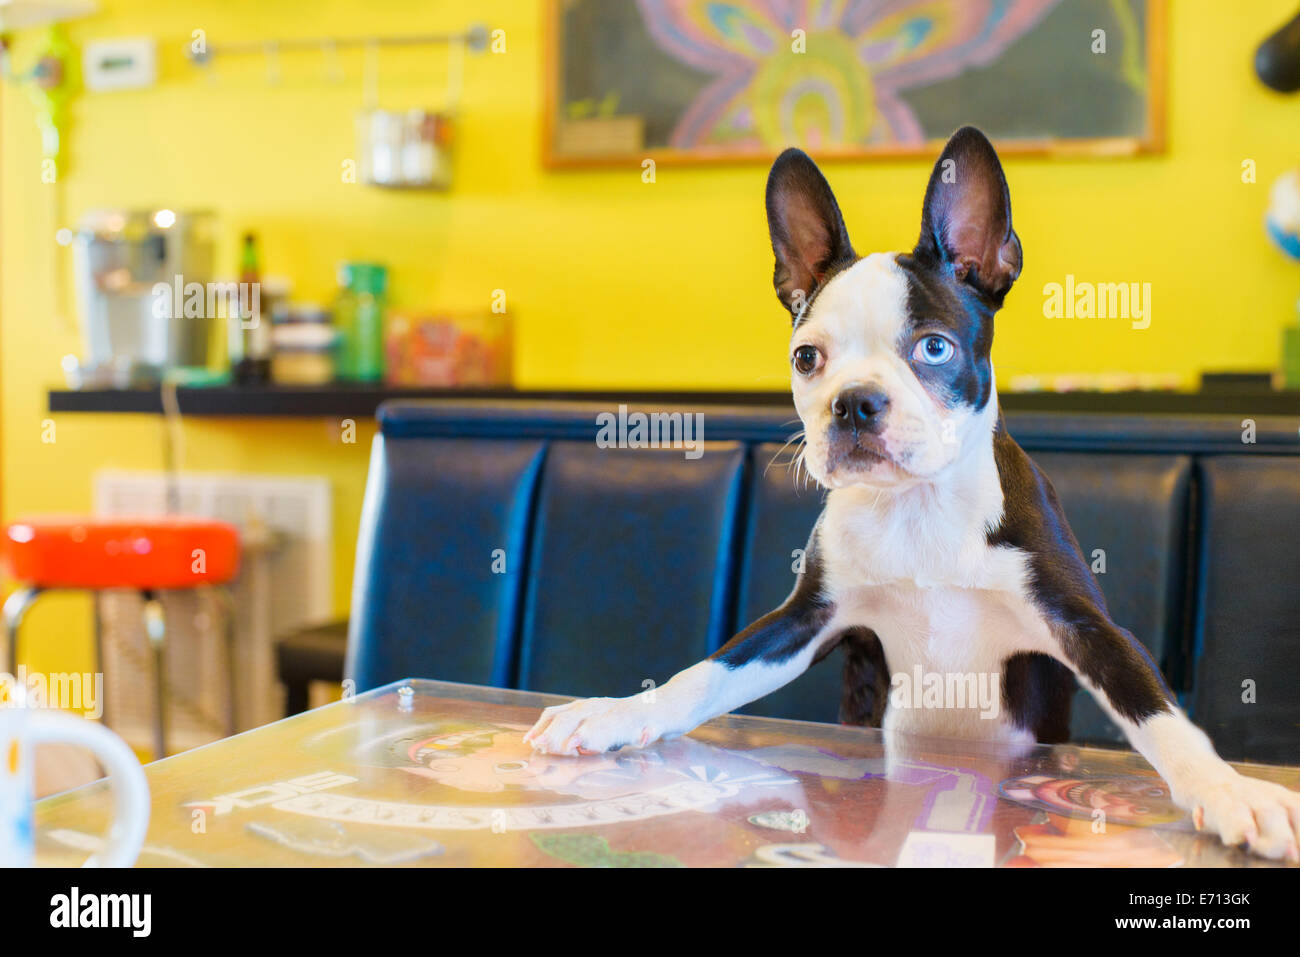 Portrait de chien mignon sur table de cuisine Banque D'Images